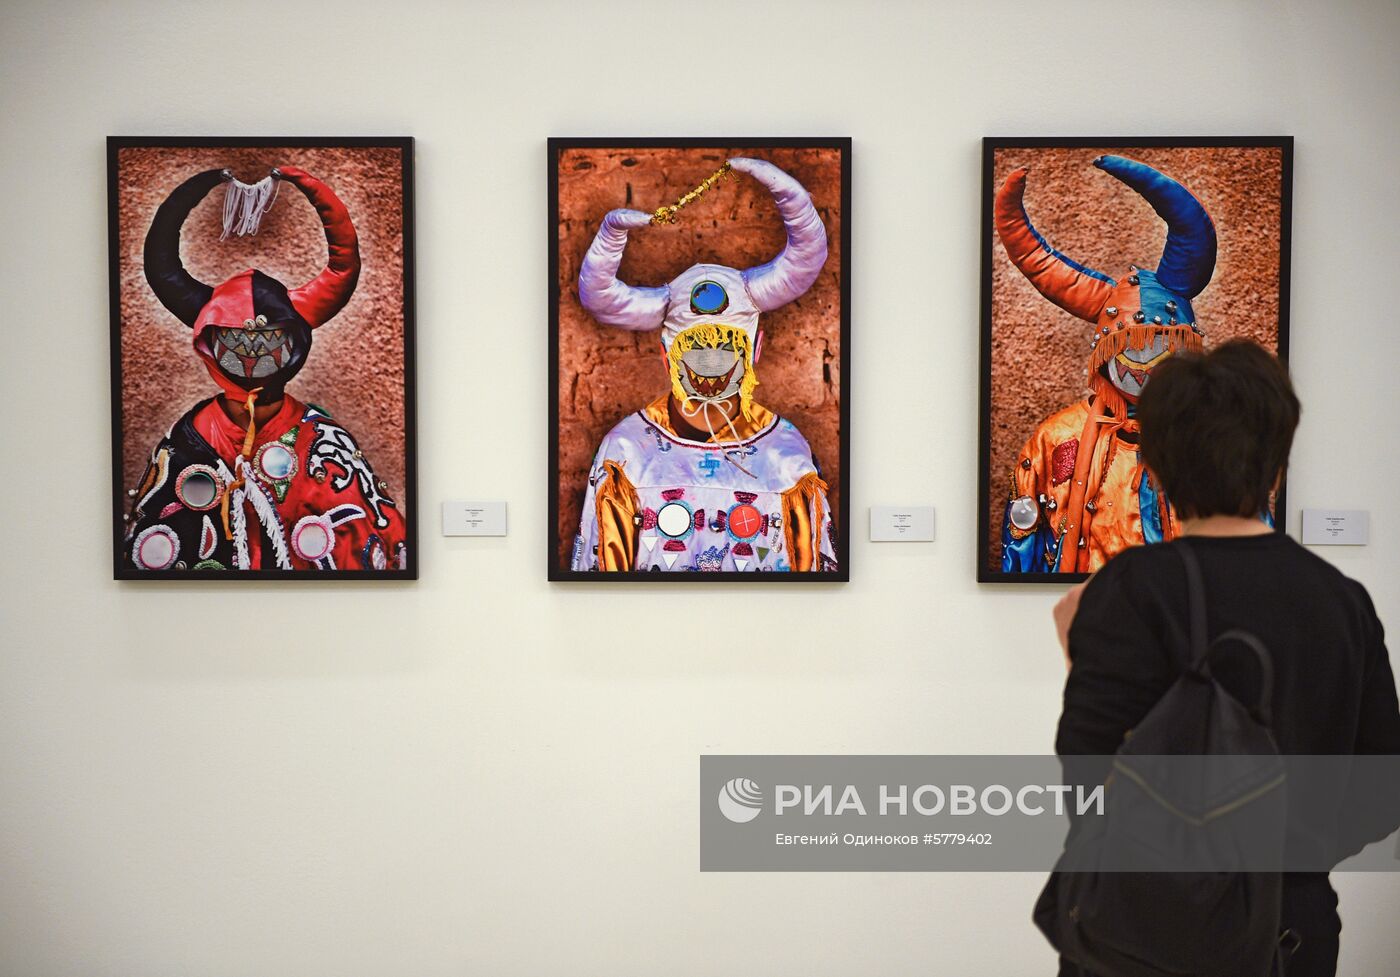 Открытие XI Московской Международной Биеннале "Мода и стиль в фотографии-2019"